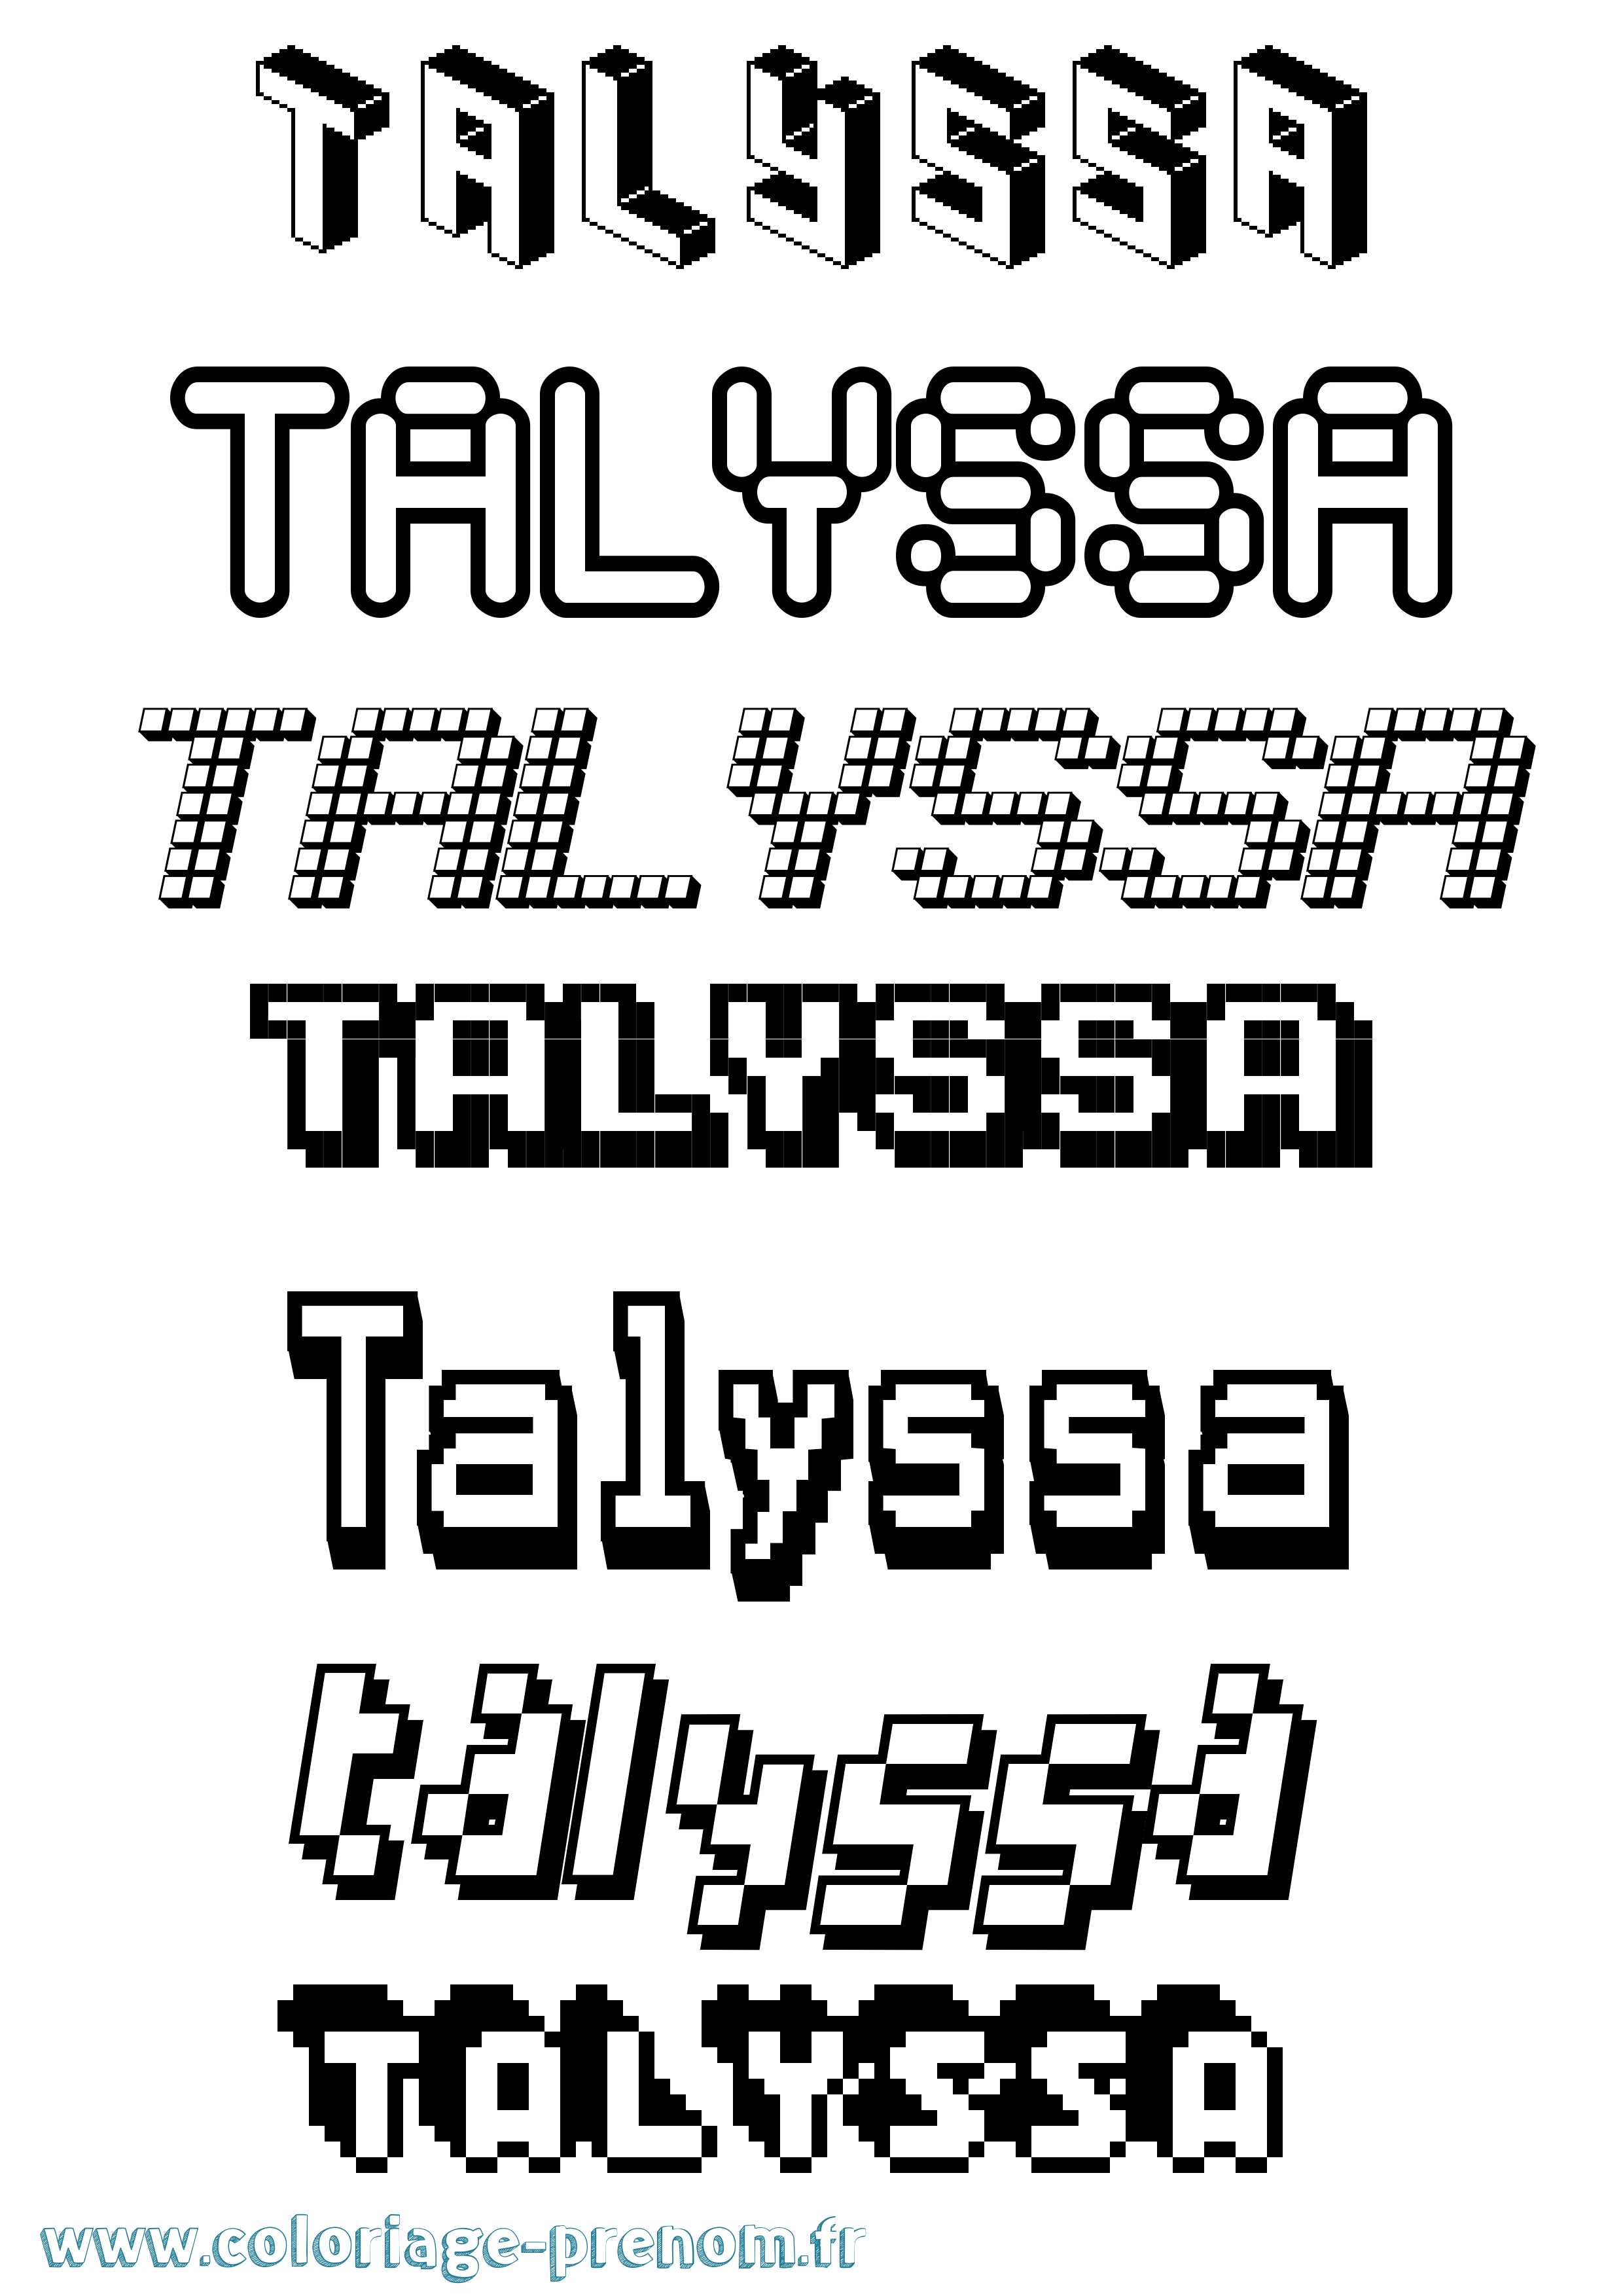 Coloriage prénom Talyssa Pixel